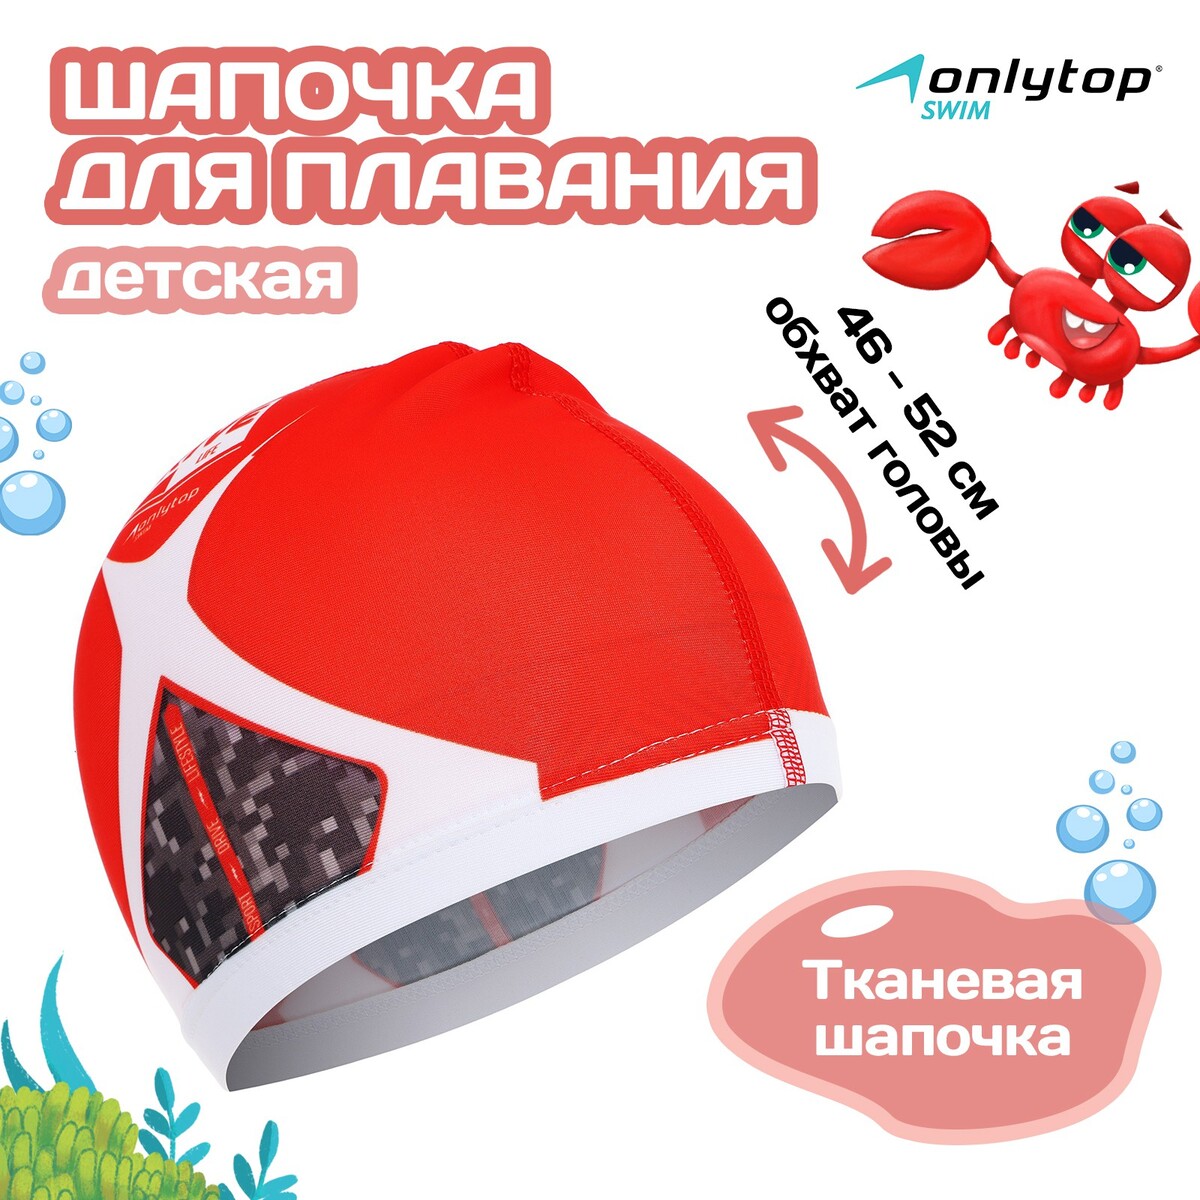 Шапочка для плавания детская onlytop drive, тканевая, обхват 46-52 см шапочка для плавания sportex силиконовая одно ная b31520 3 красный